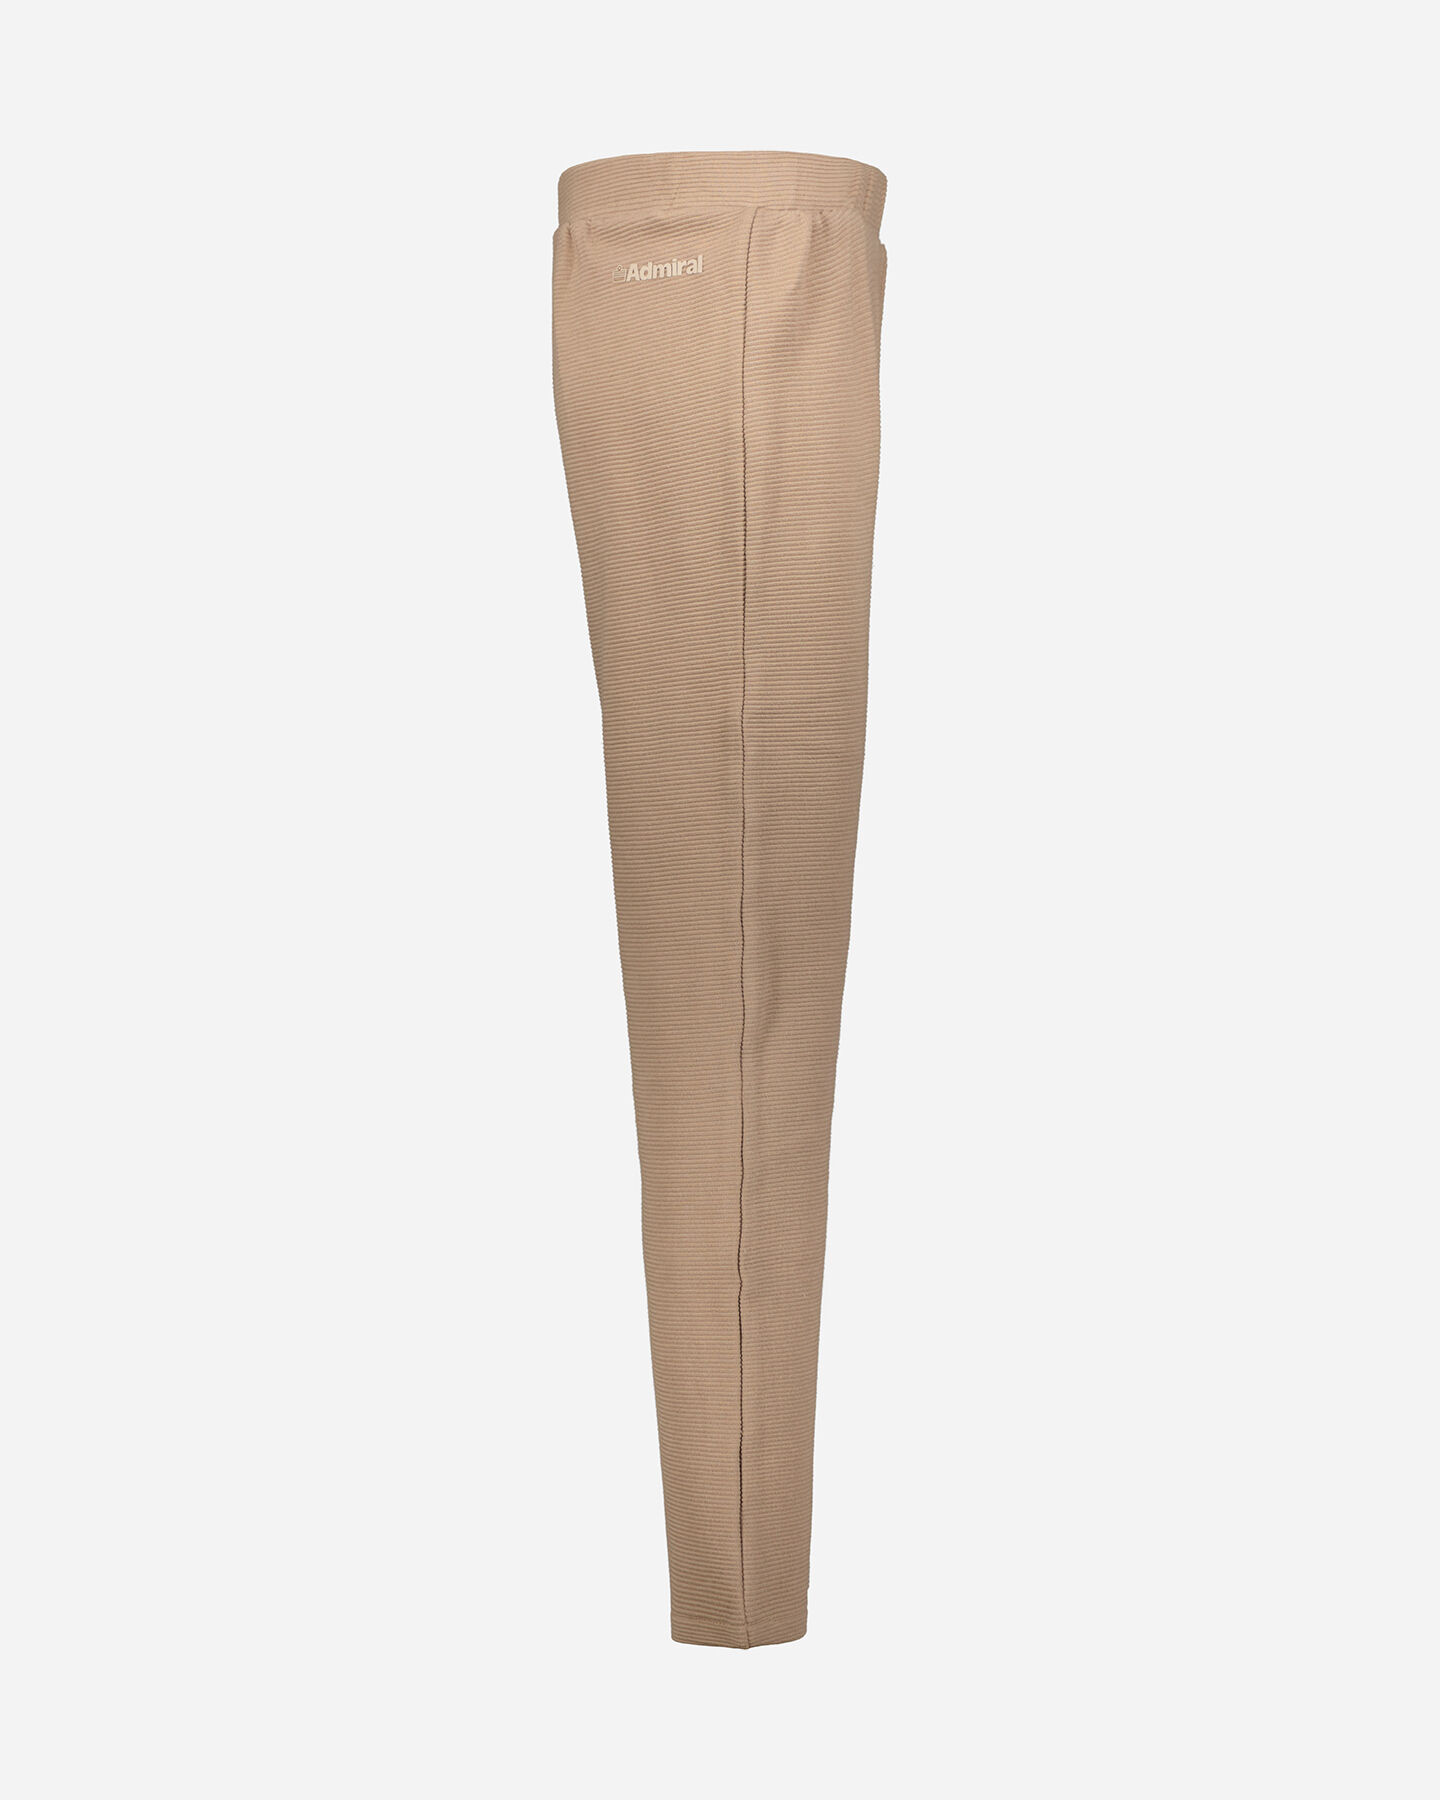  Pantalone ADMIRAL CLASSIC W S4119471|168|M scatto 1